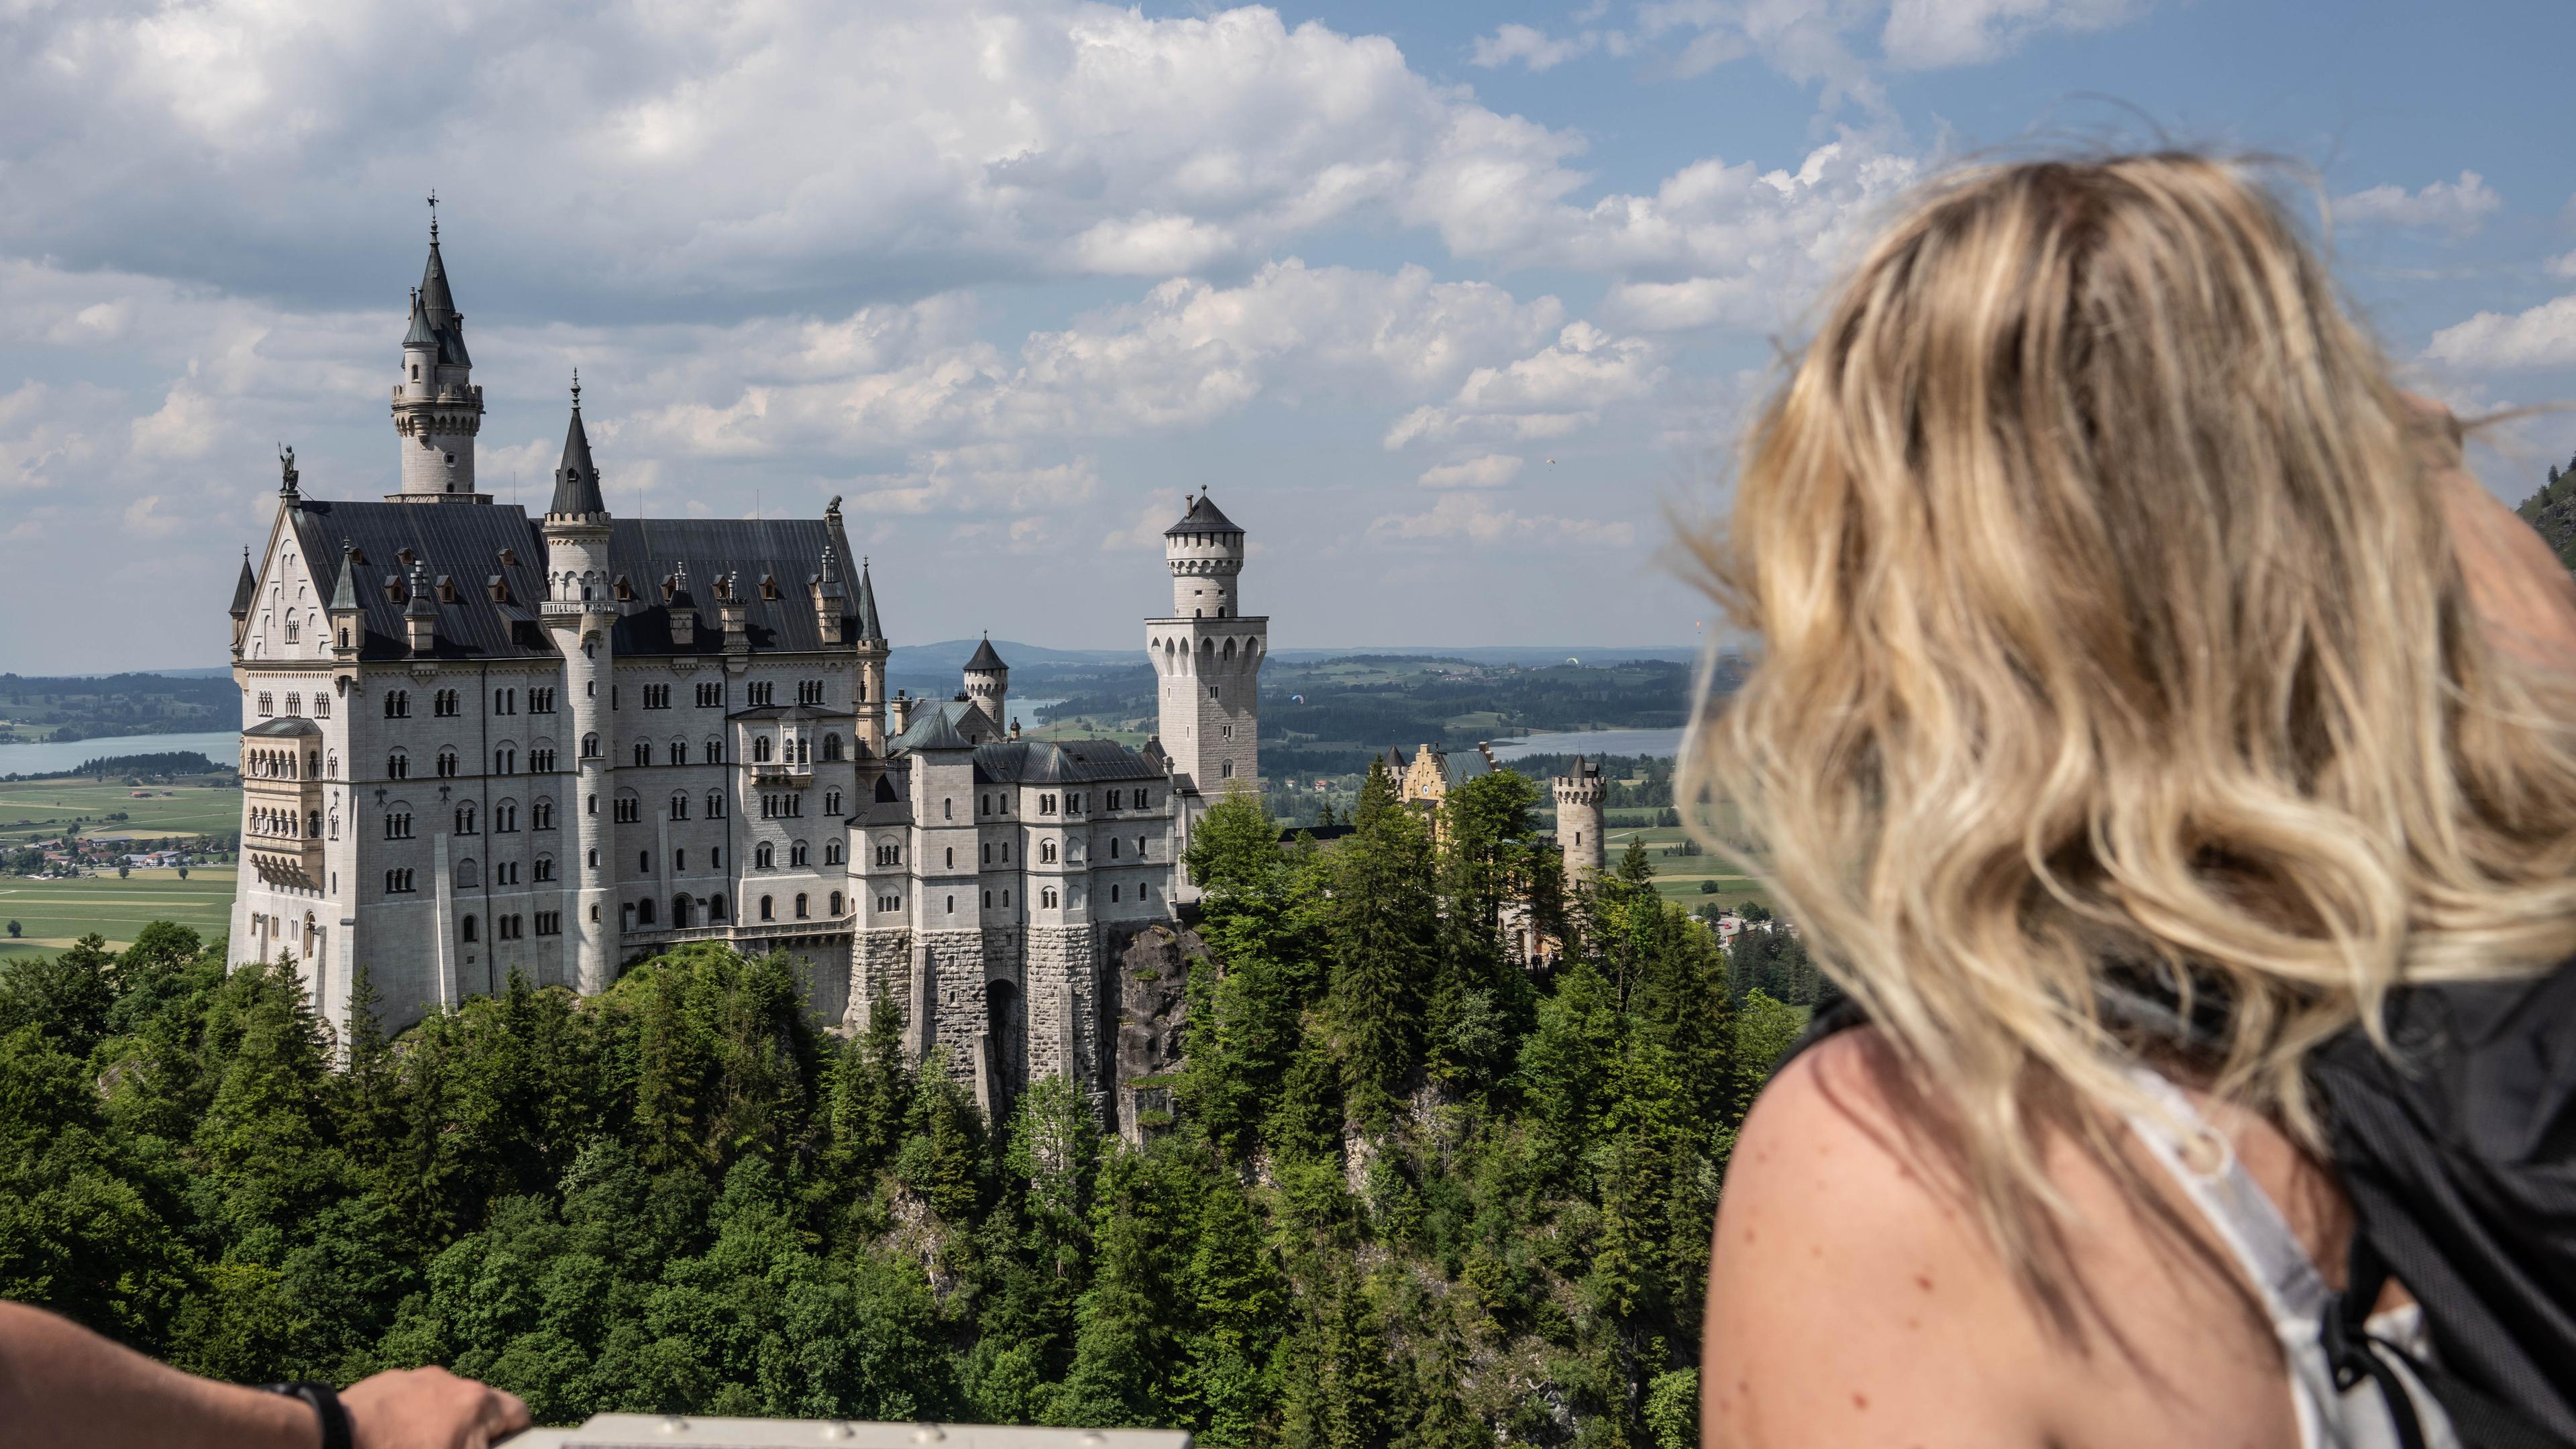 Zu sehen ist eine Frau, die von einer Hängebrücke aus auf Schloss Neuschwanstein blickt. 